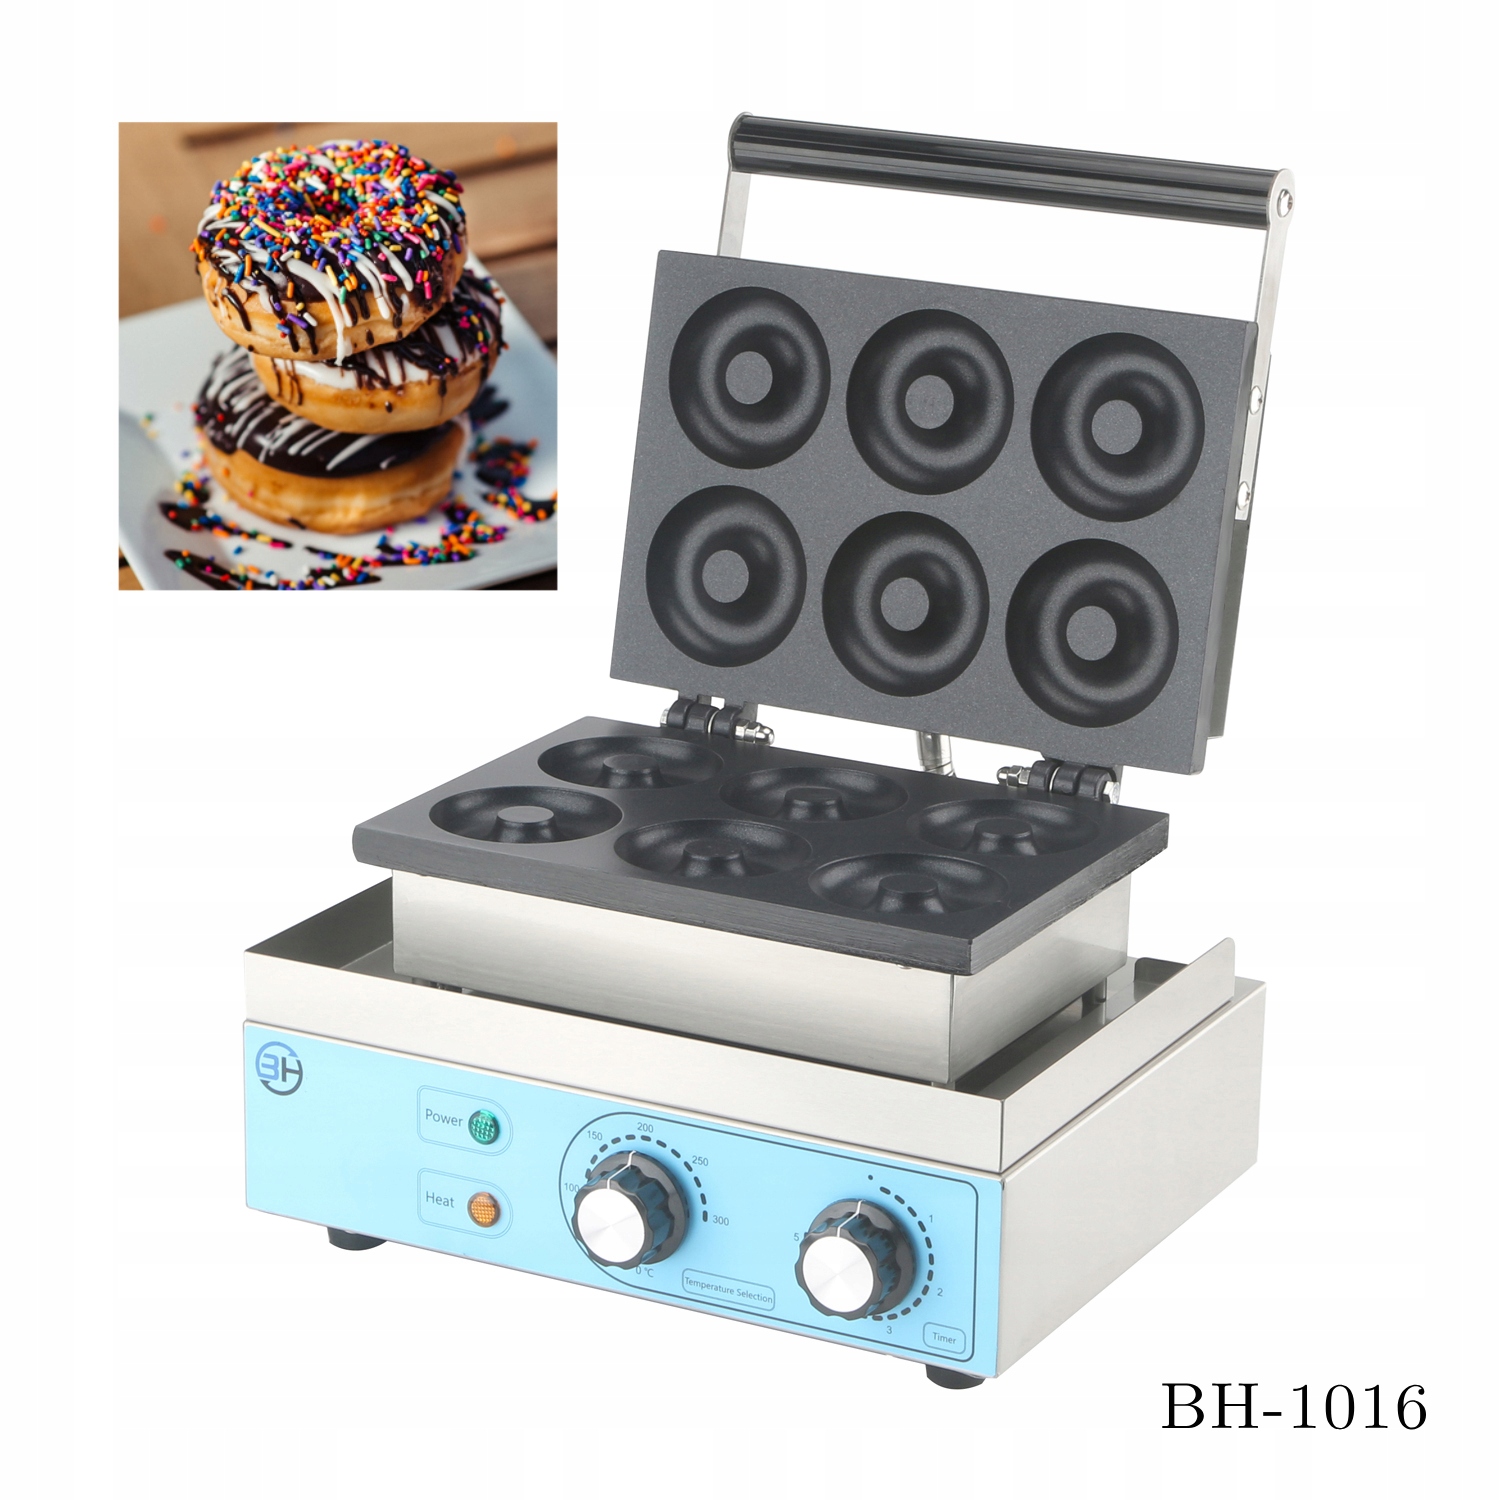 Mini pączki/gofry donut maszyna profesjonalna gastronomia 1550 W CUKUS